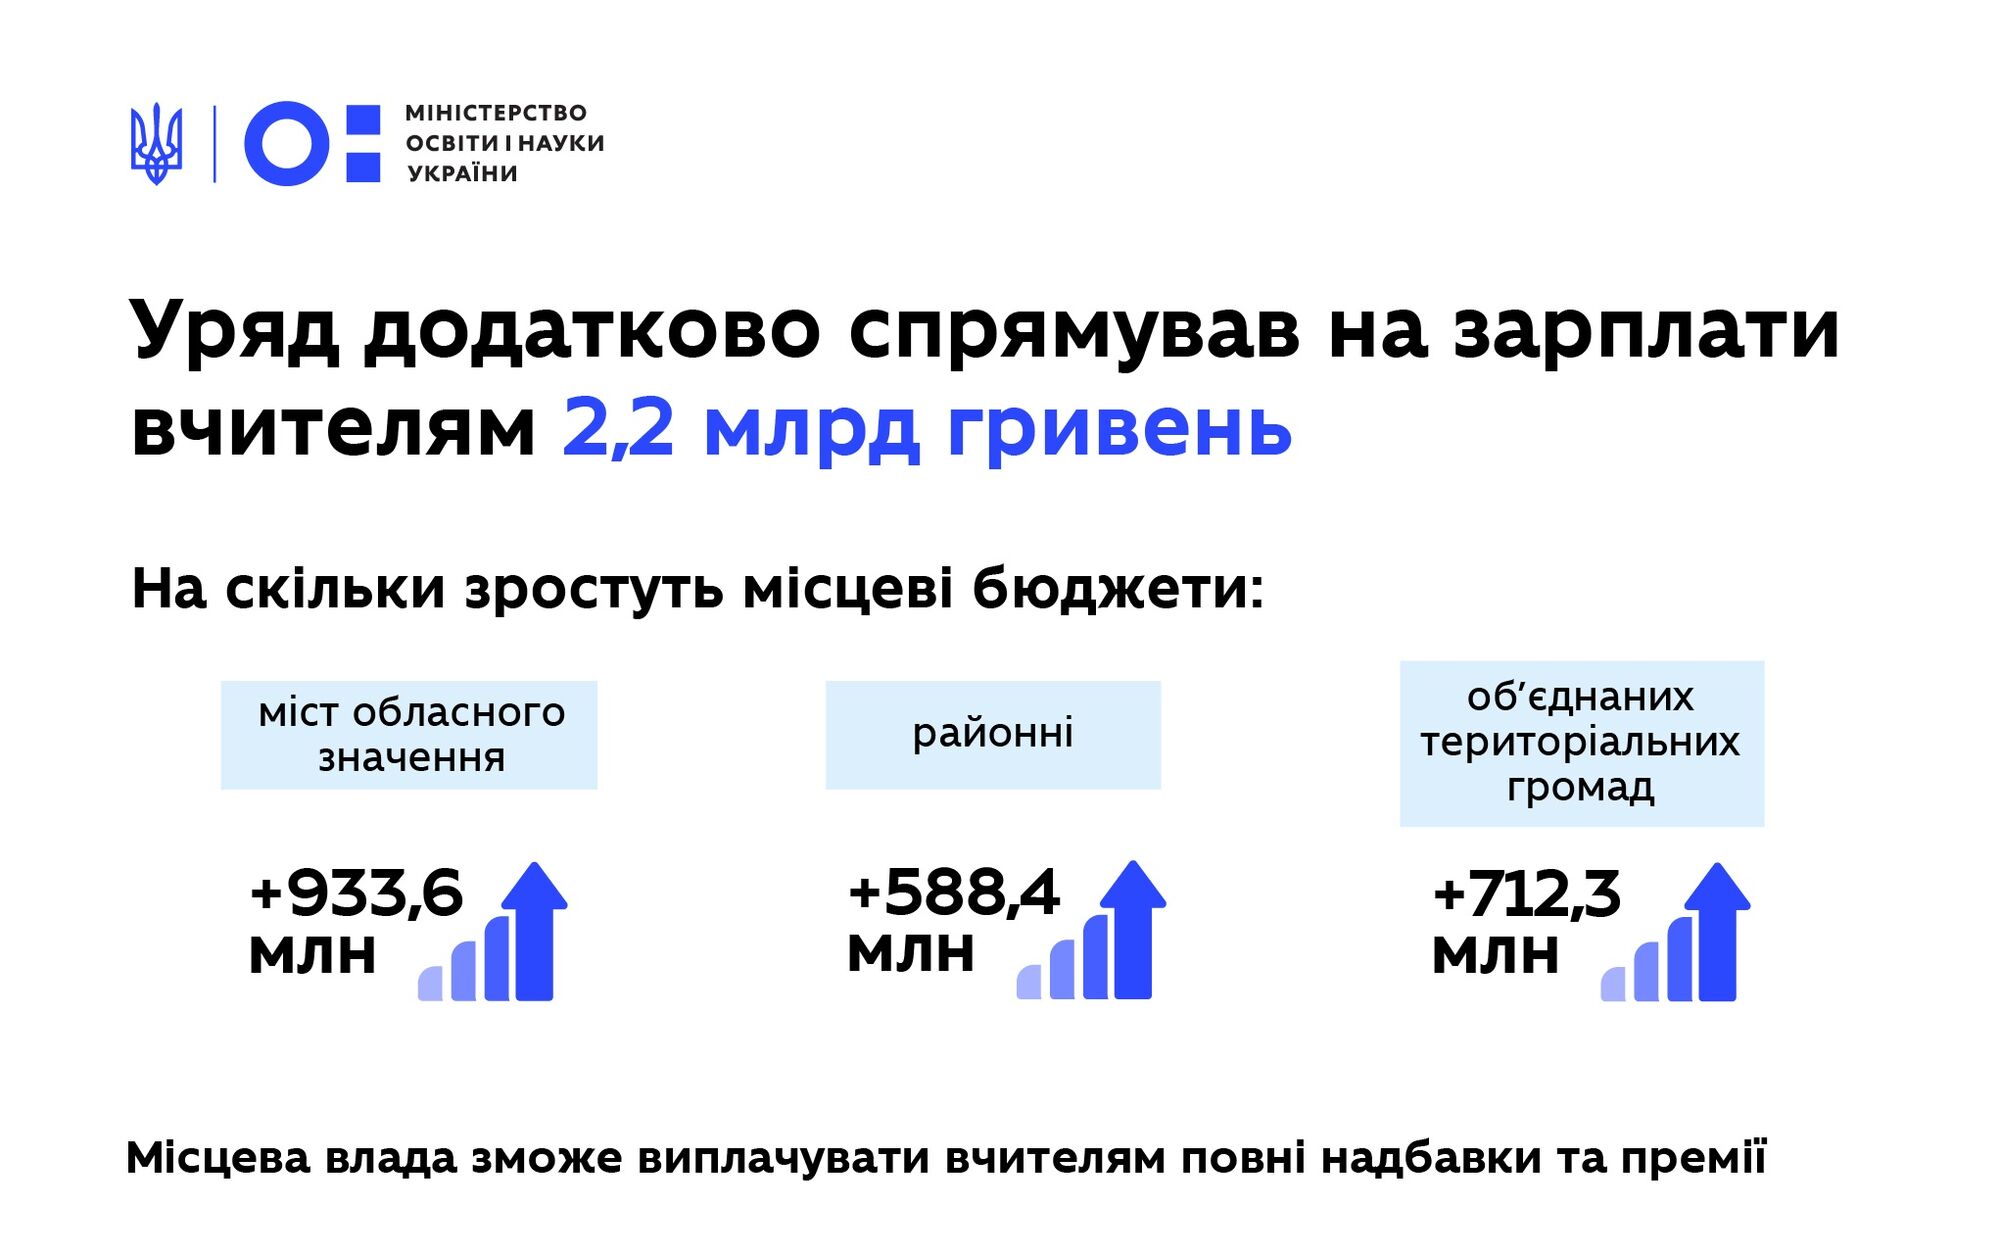 Кабмин выделил местным бюджетам 2,2 млрд грн на надбавки учителям